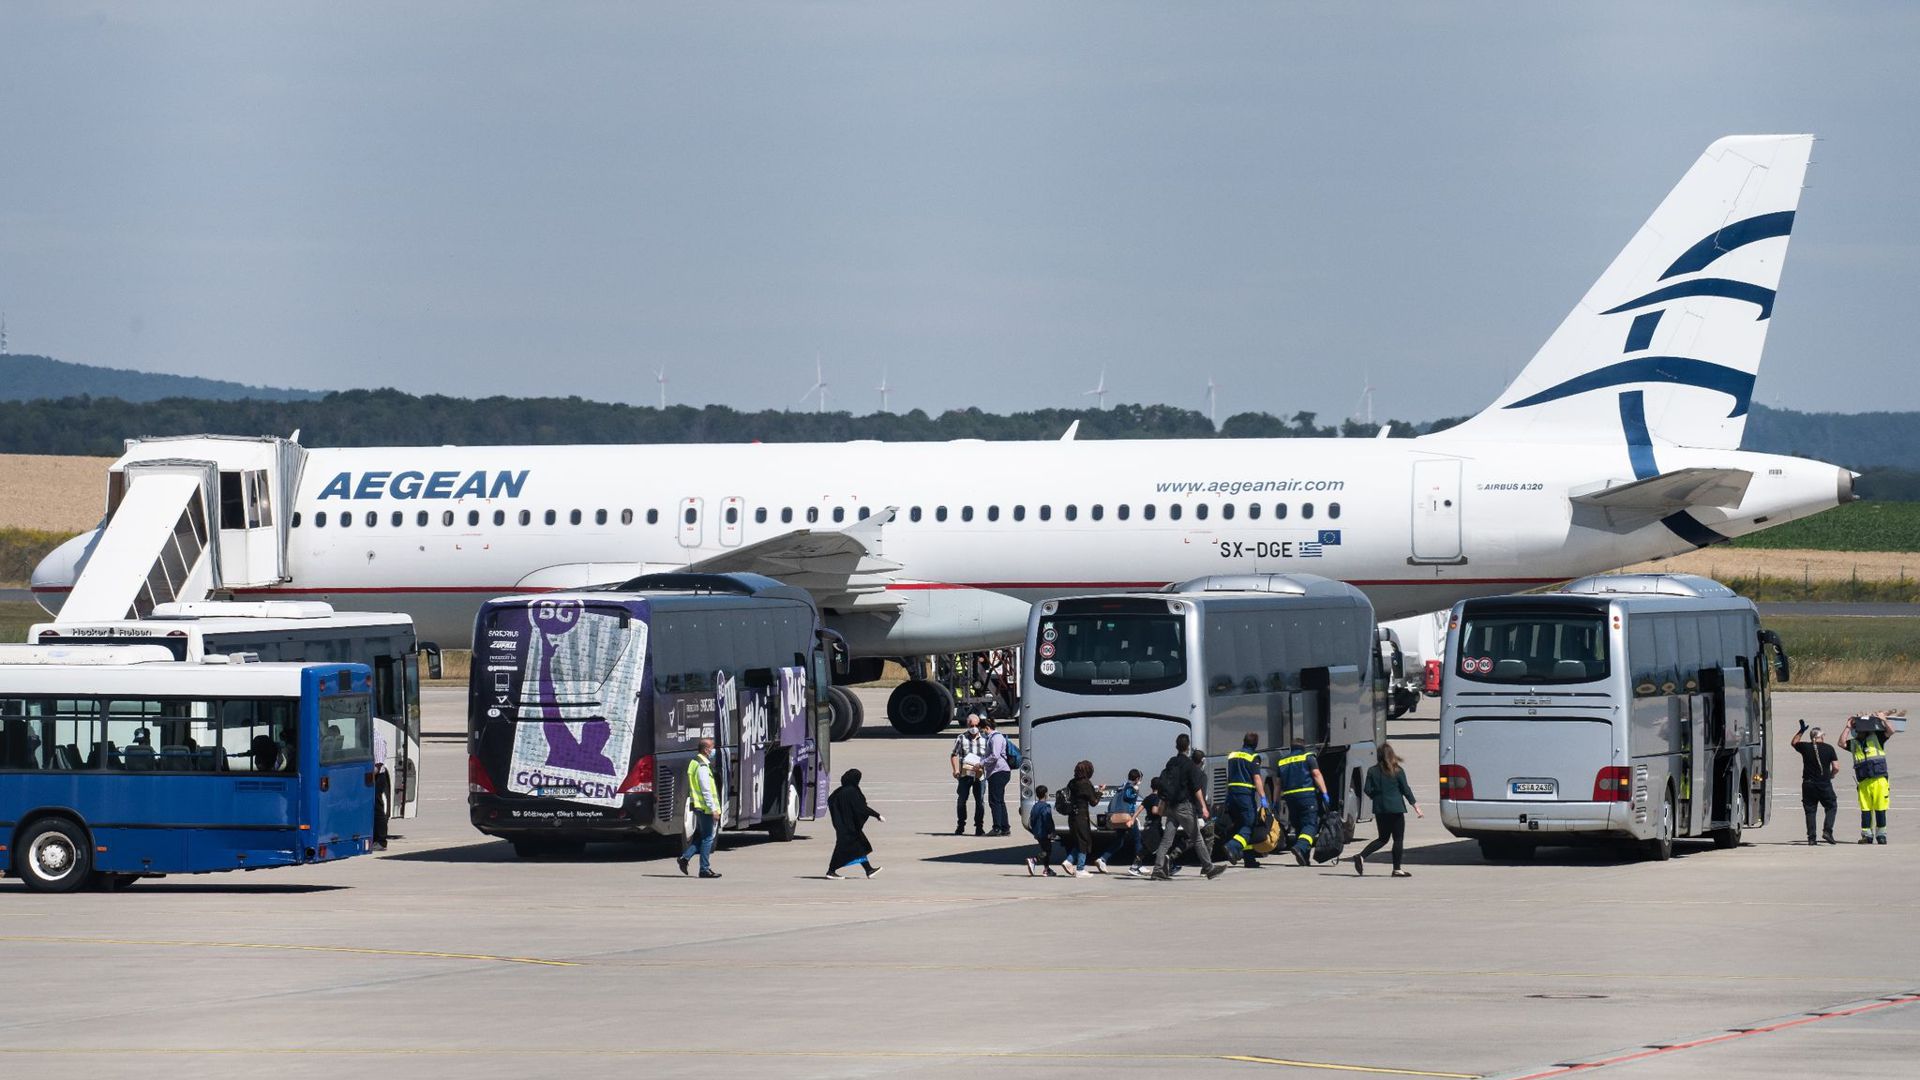 Flüchtlinge aus griechischen Flüchtlingslagern steigen aus dem Flugzeug am Flughafen Kassel-Calden.